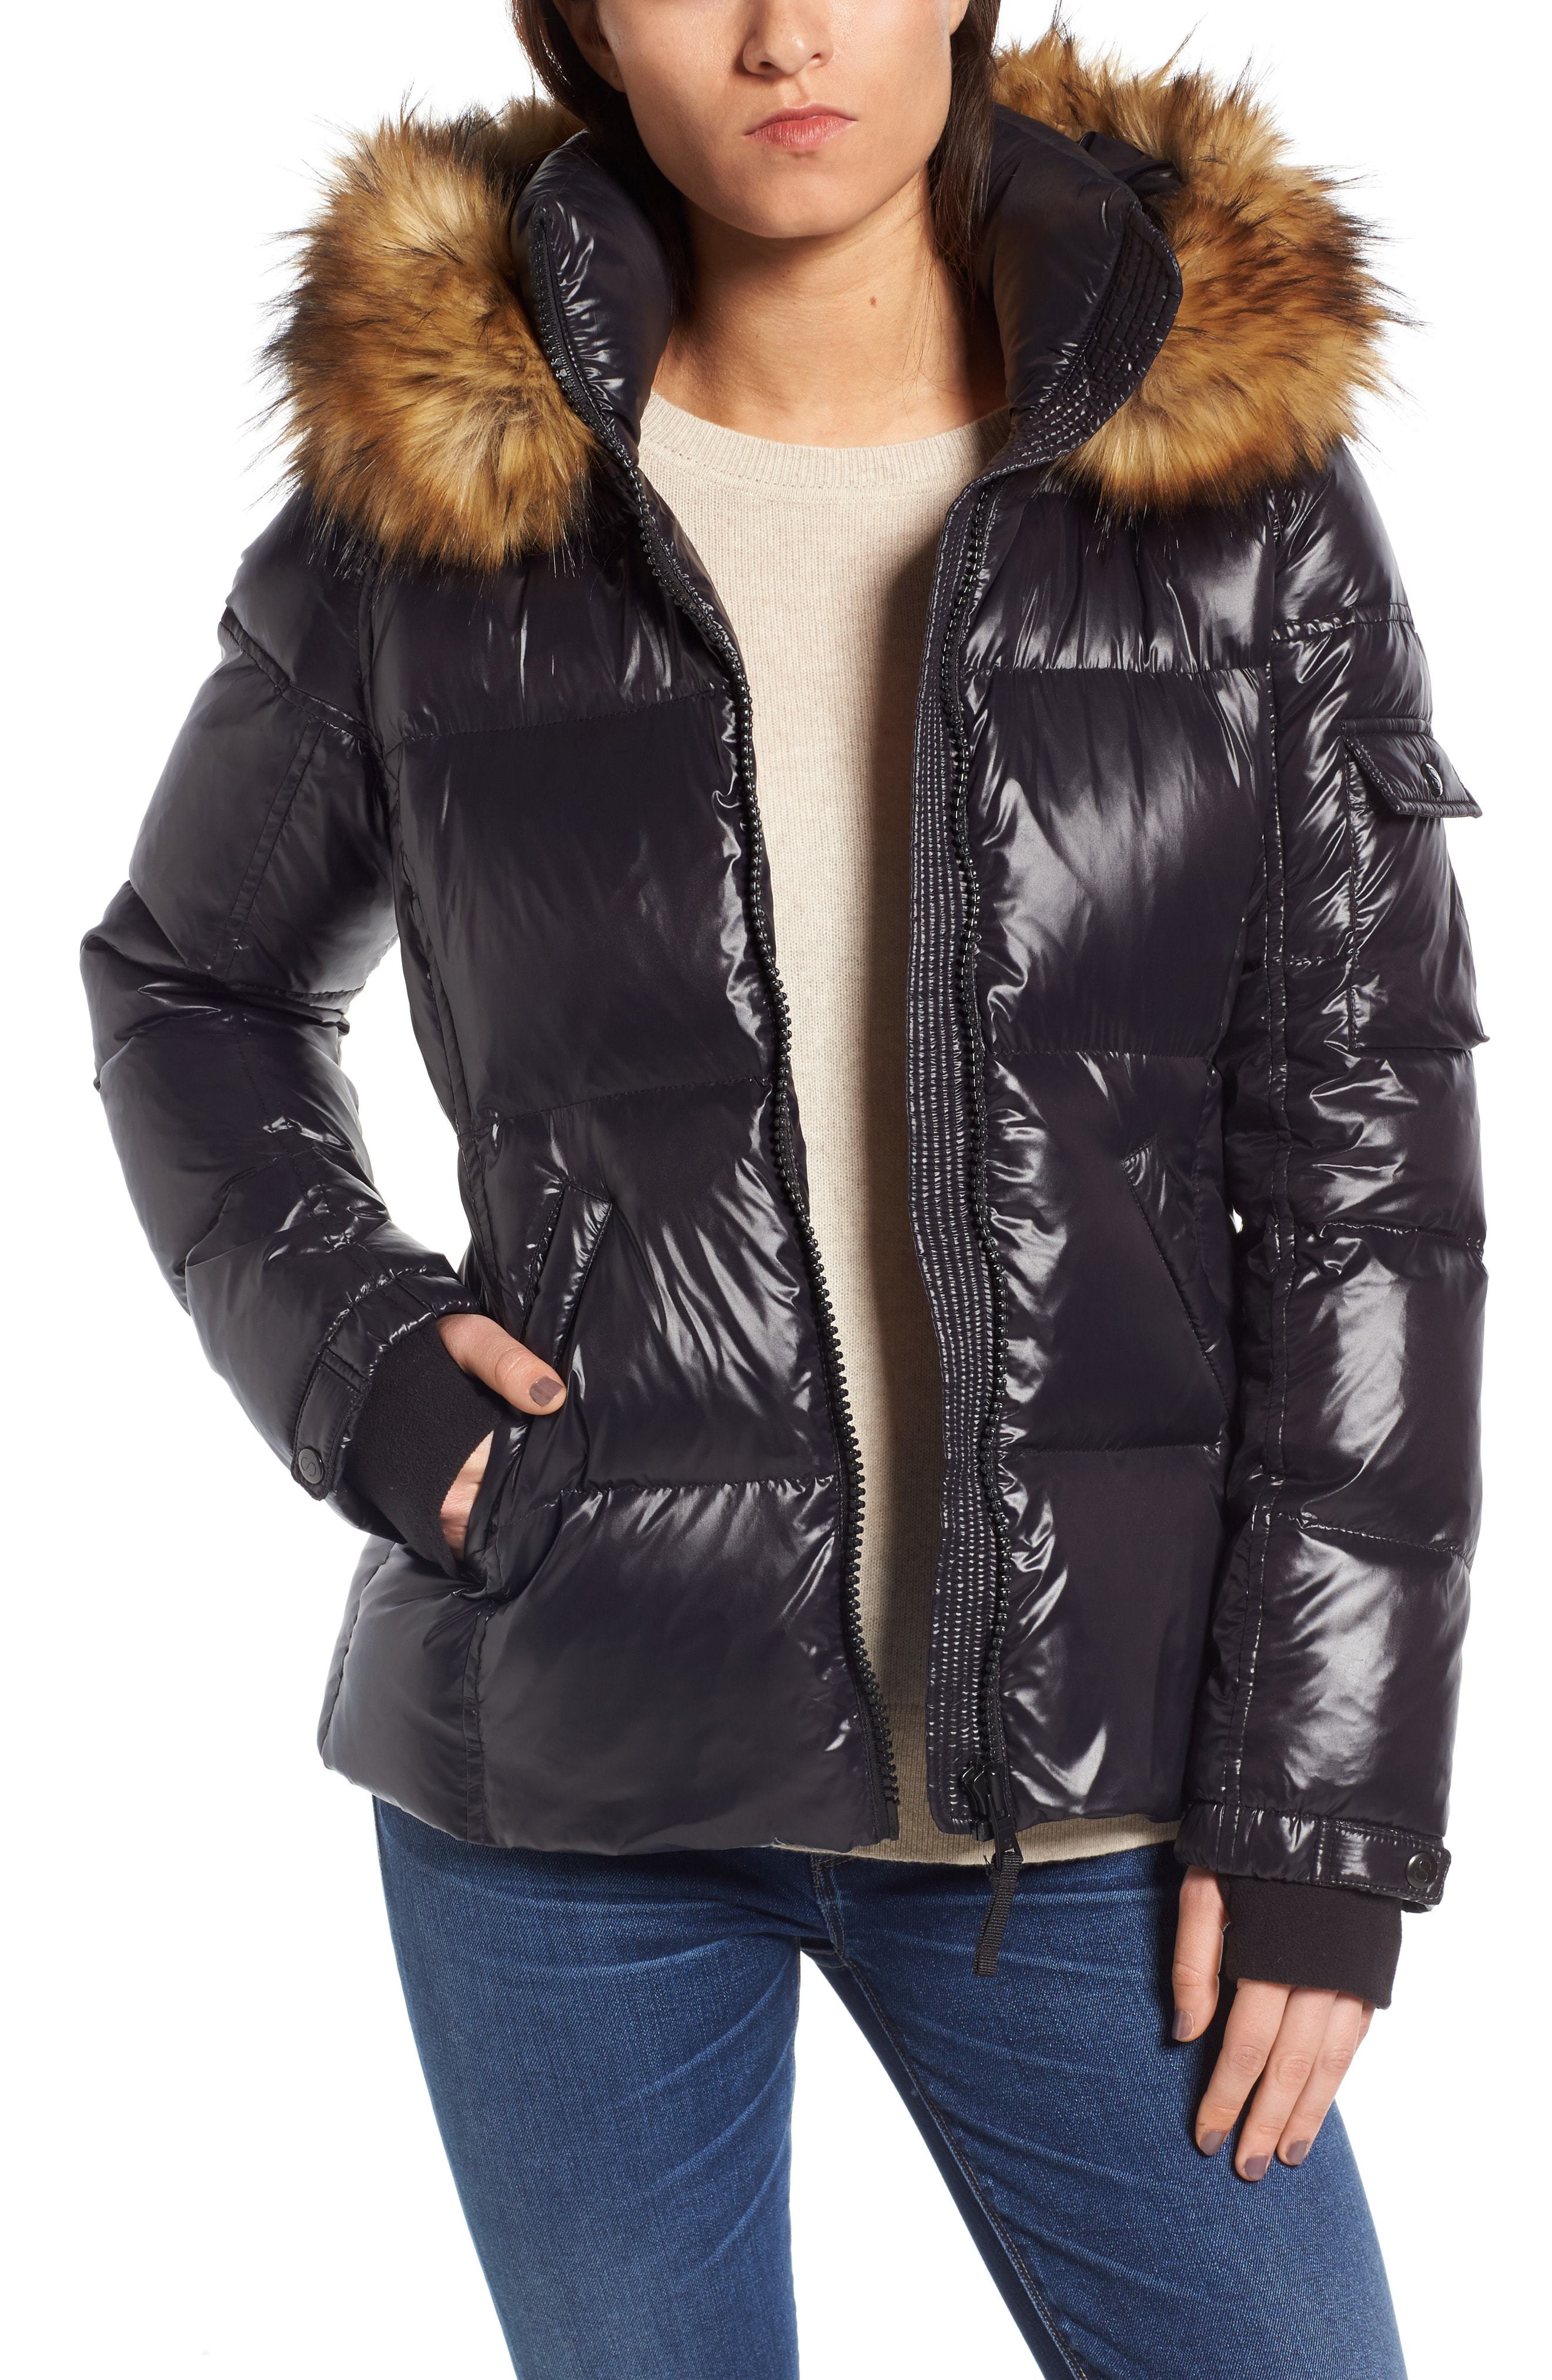 S13 Kylie Gloss Jacket